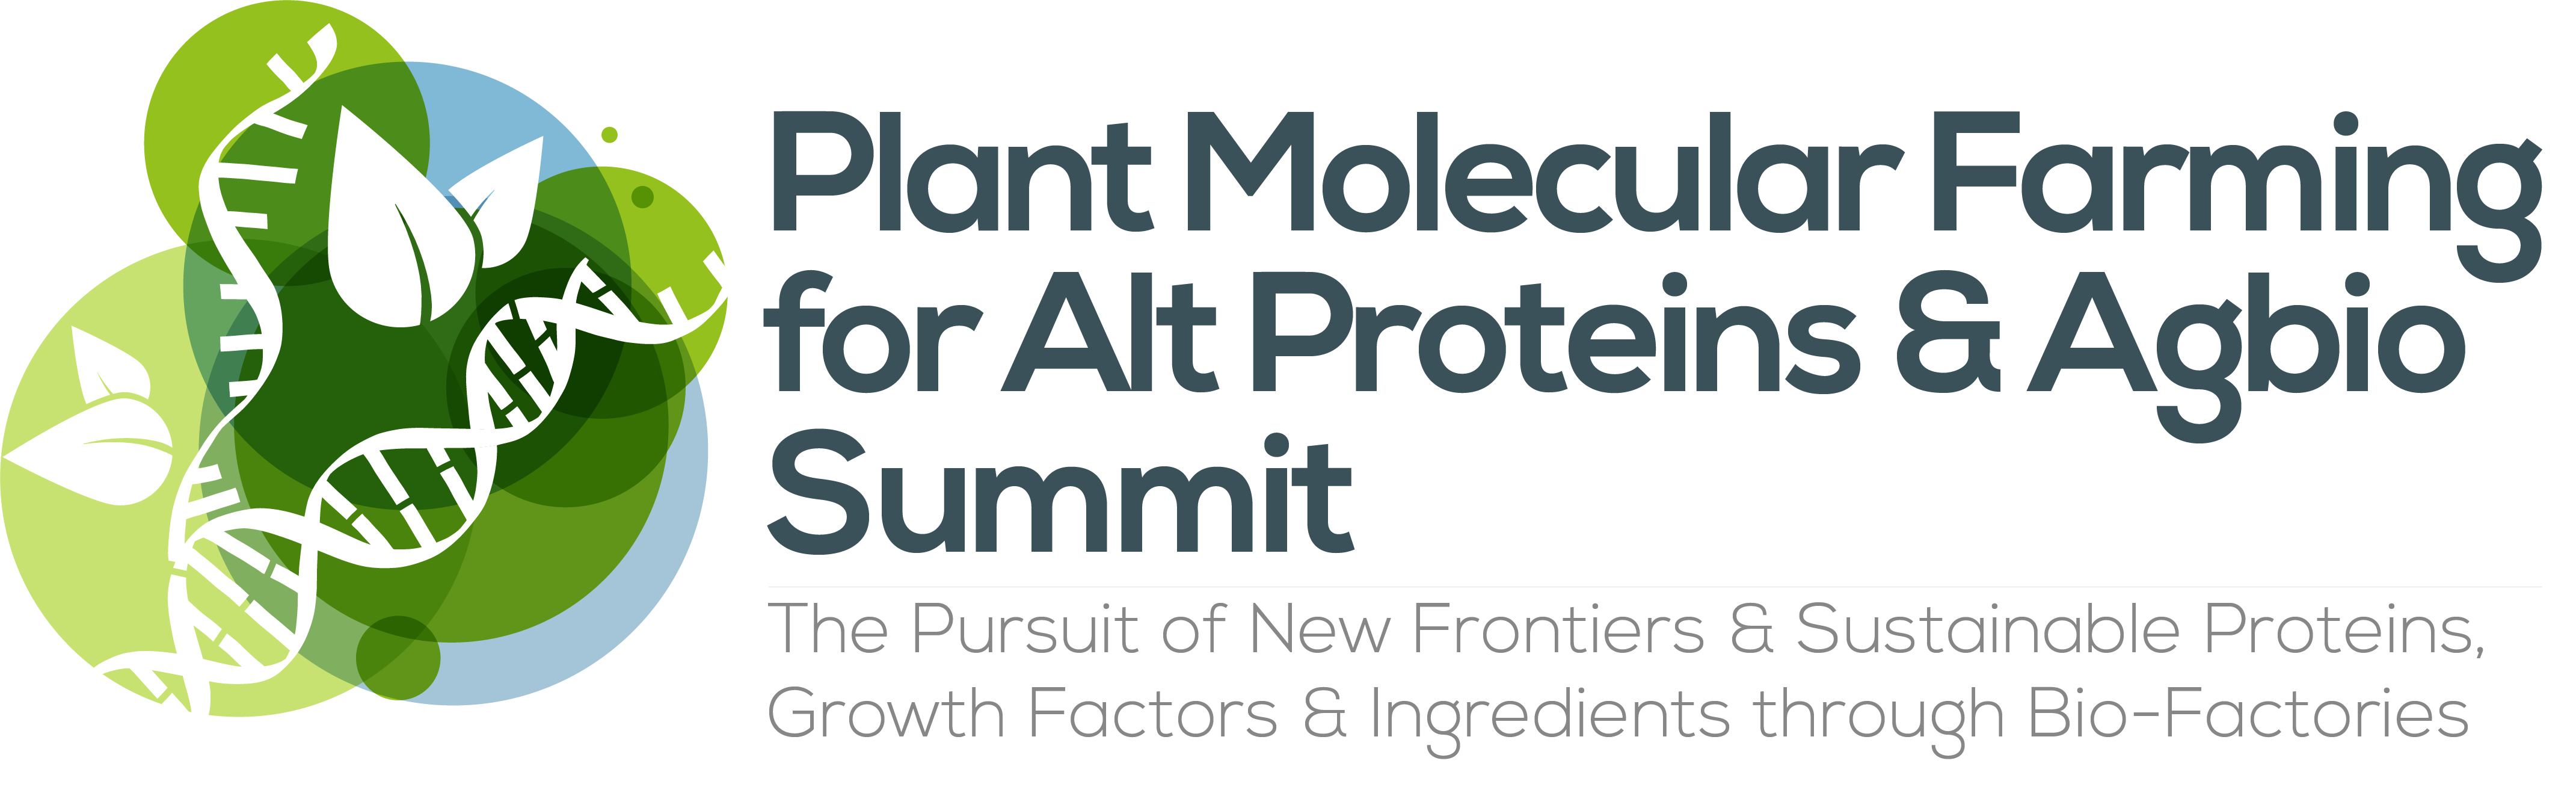 HW240117 50028 Plant Molecular Farming for AltProteins & Cellular Agbio Summit logo FINAL (1)